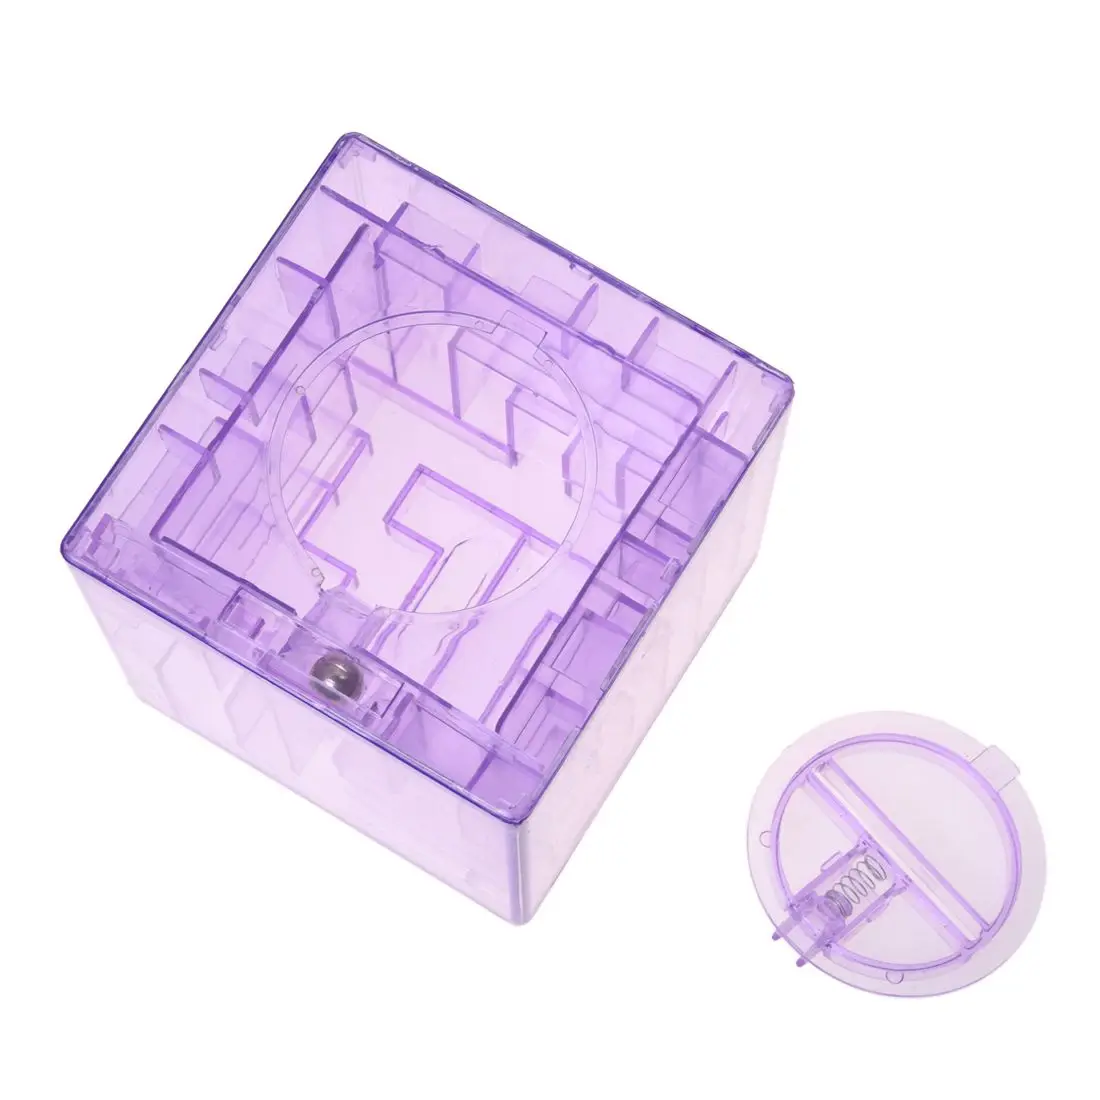 Пластиковые кубические копилки Лабиринт банк экономия монет Коллекция Чехол Коробка 3D головоломка синий